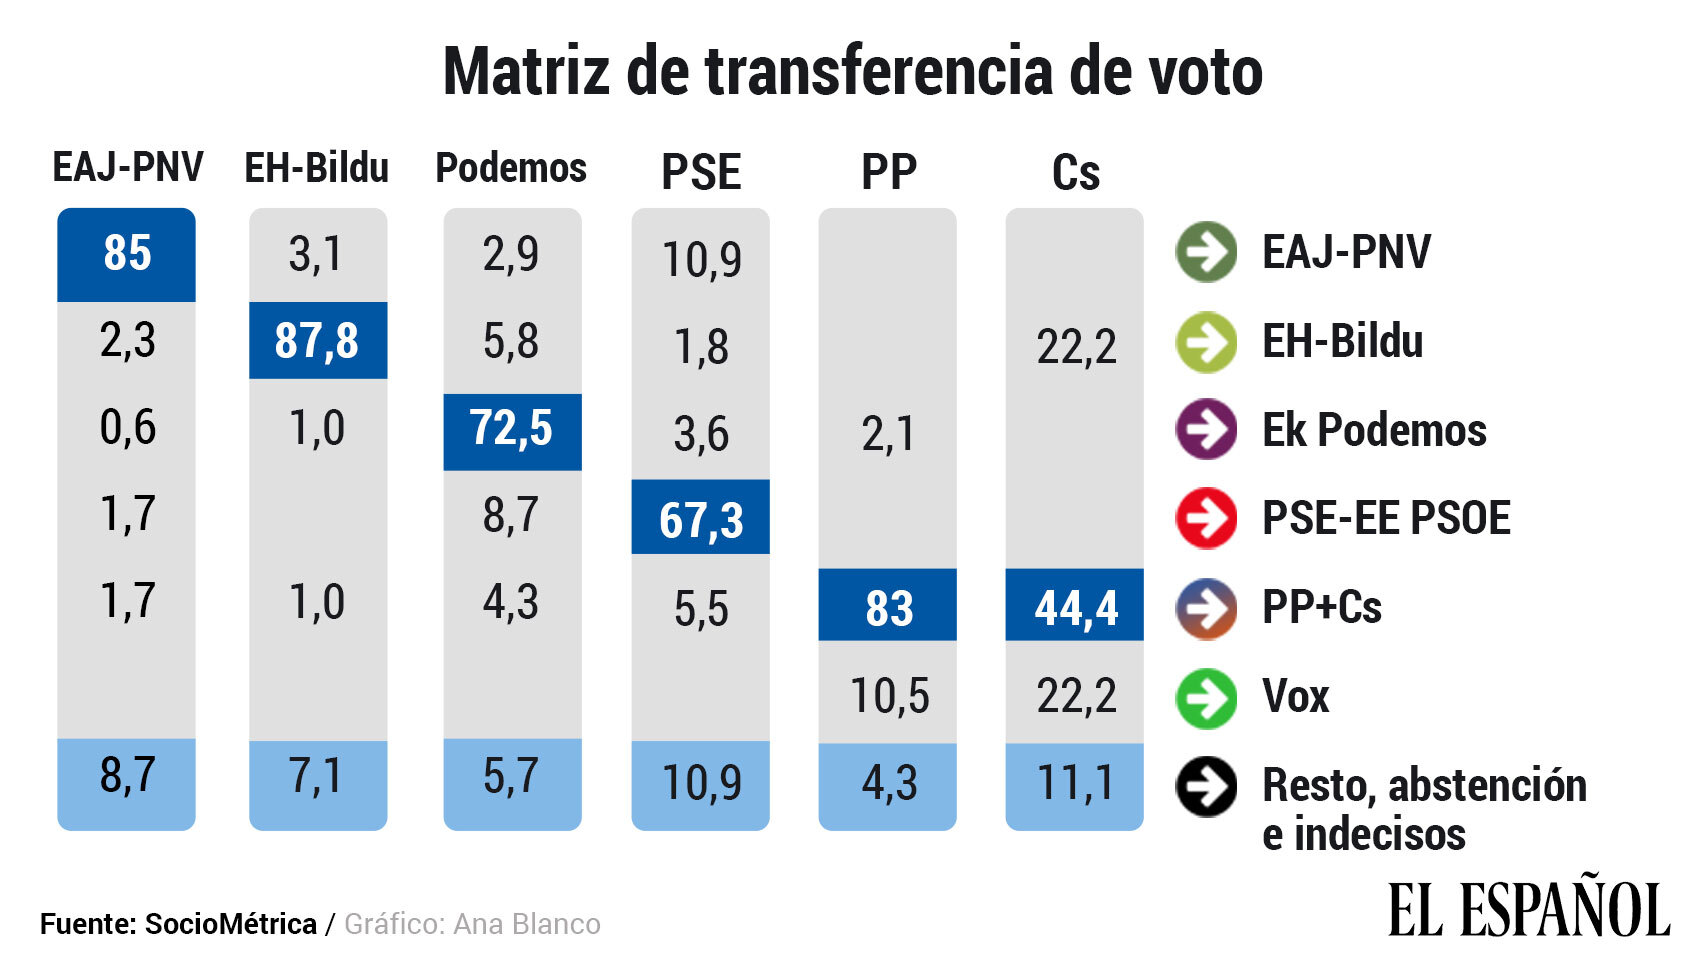 Matriz de transferencia de voto en relación a las elecciones de 2016.